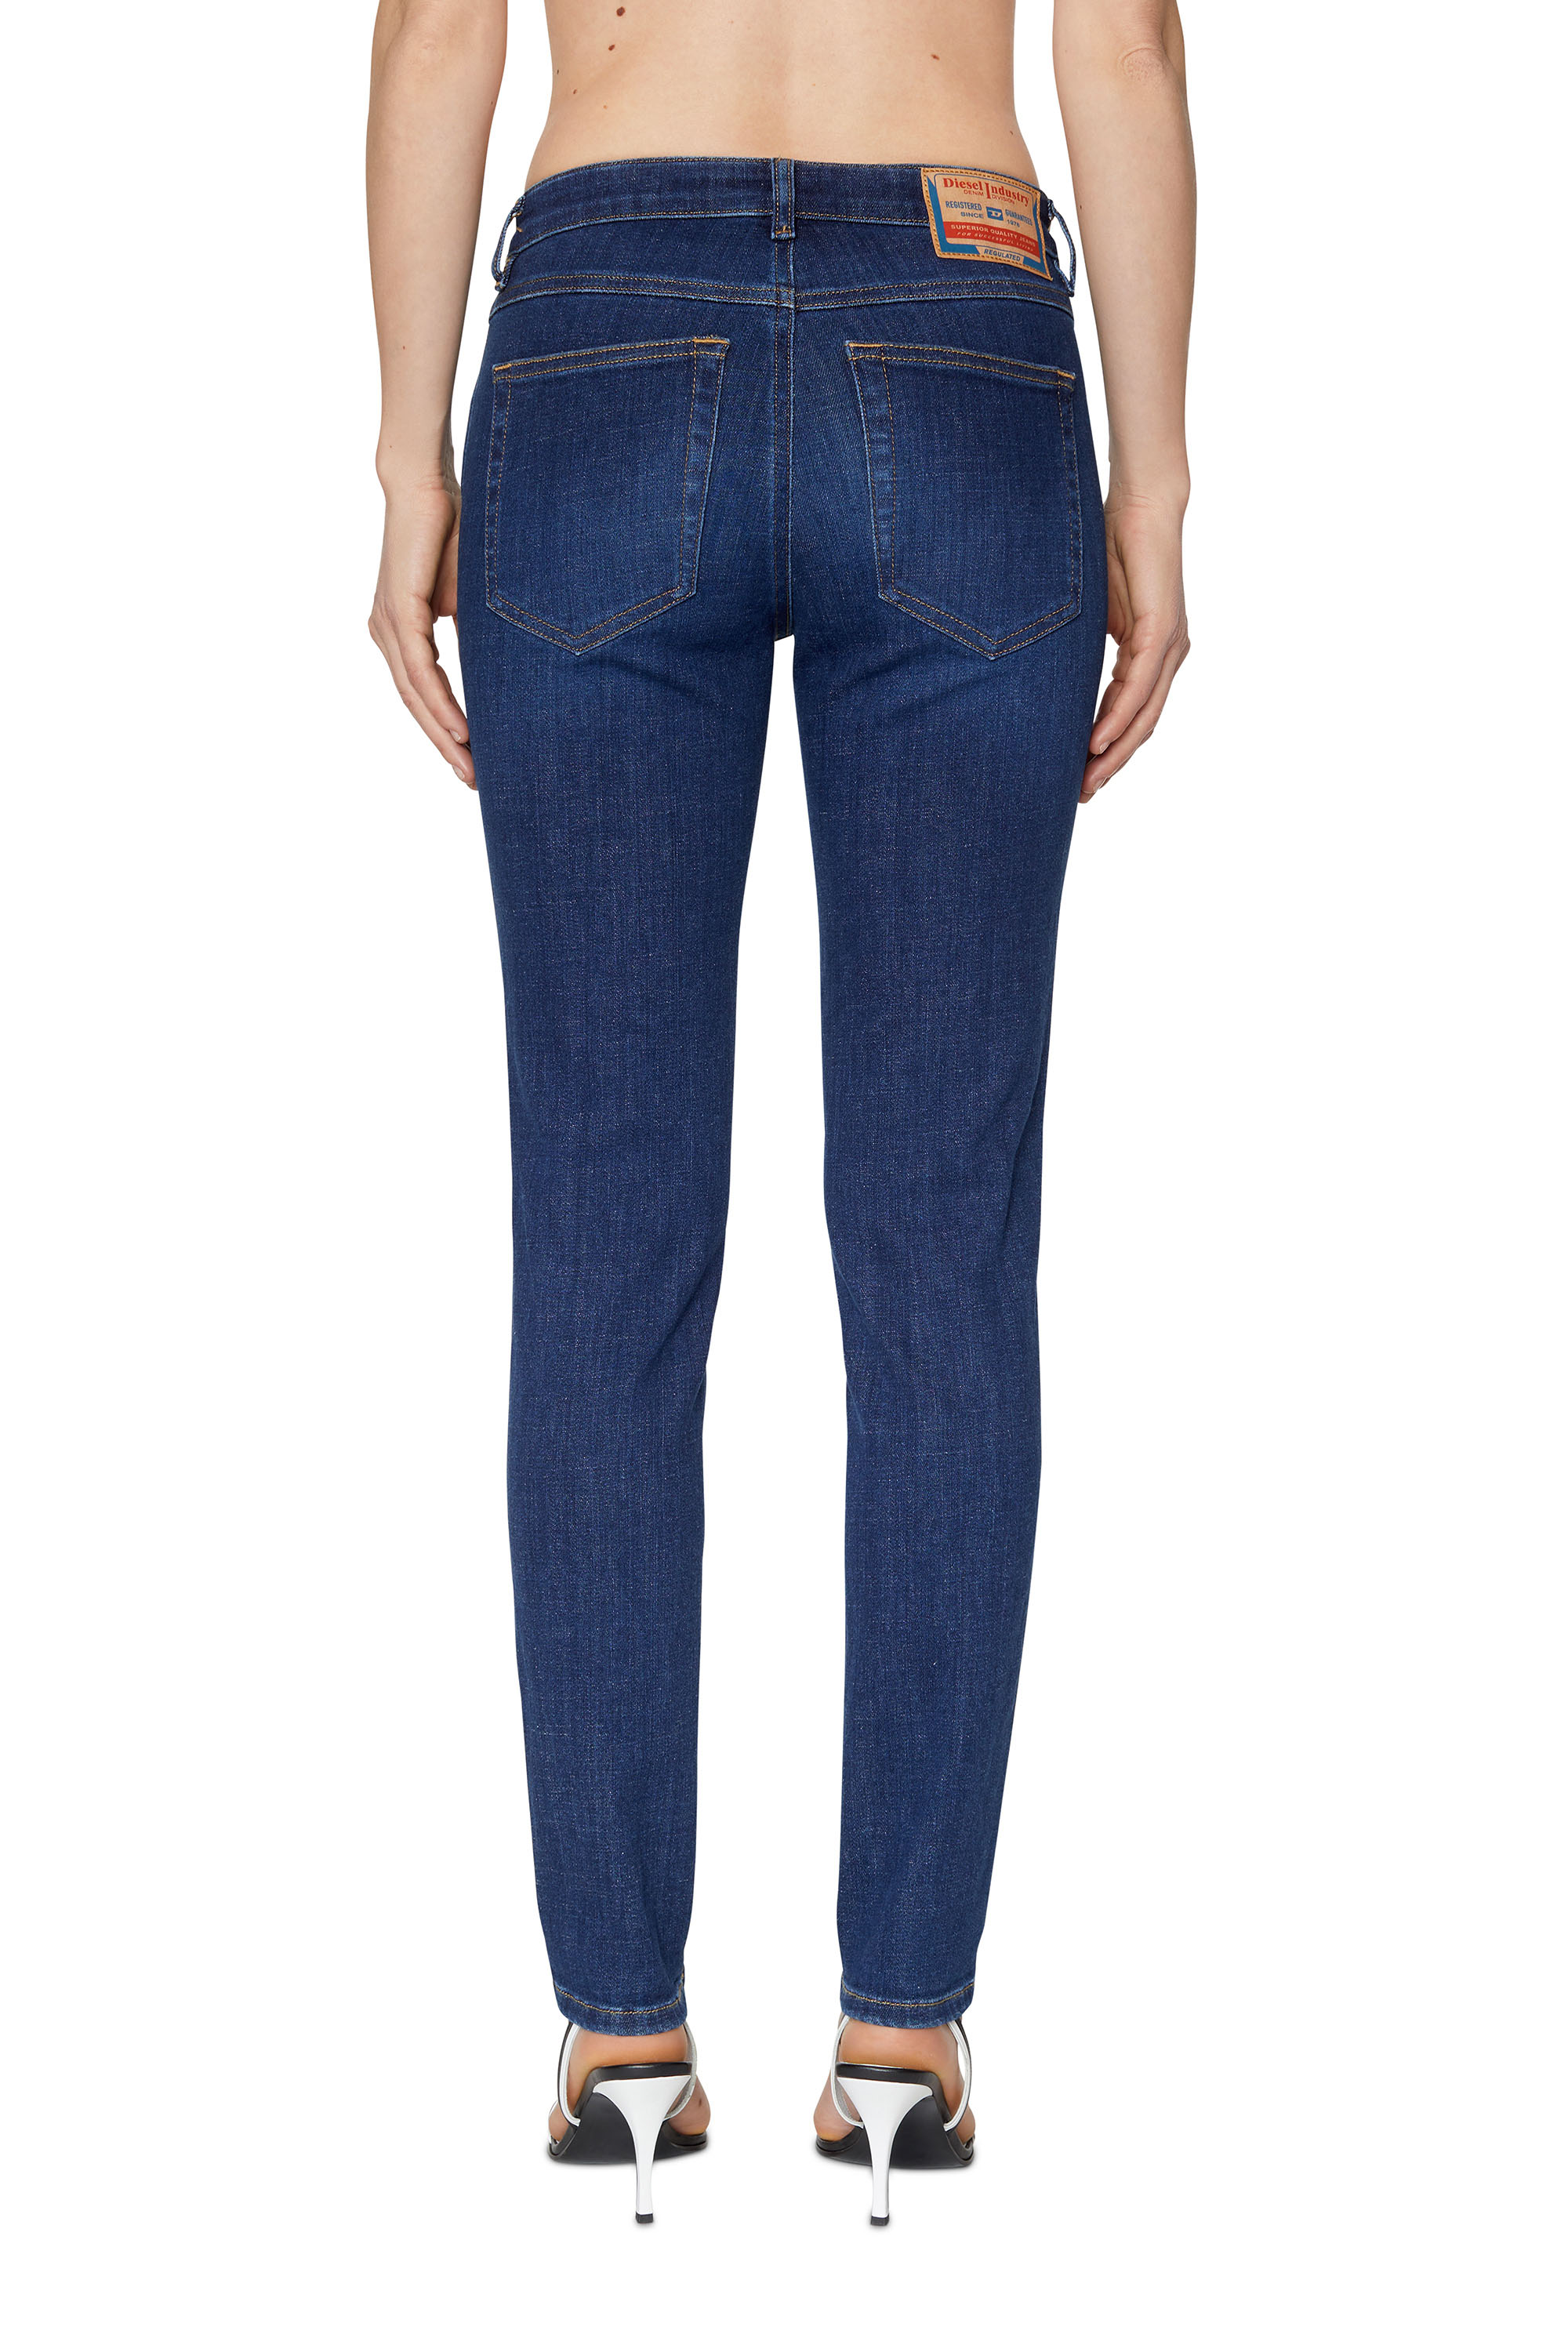 Womens Slim Jeans | Diesel Online Store